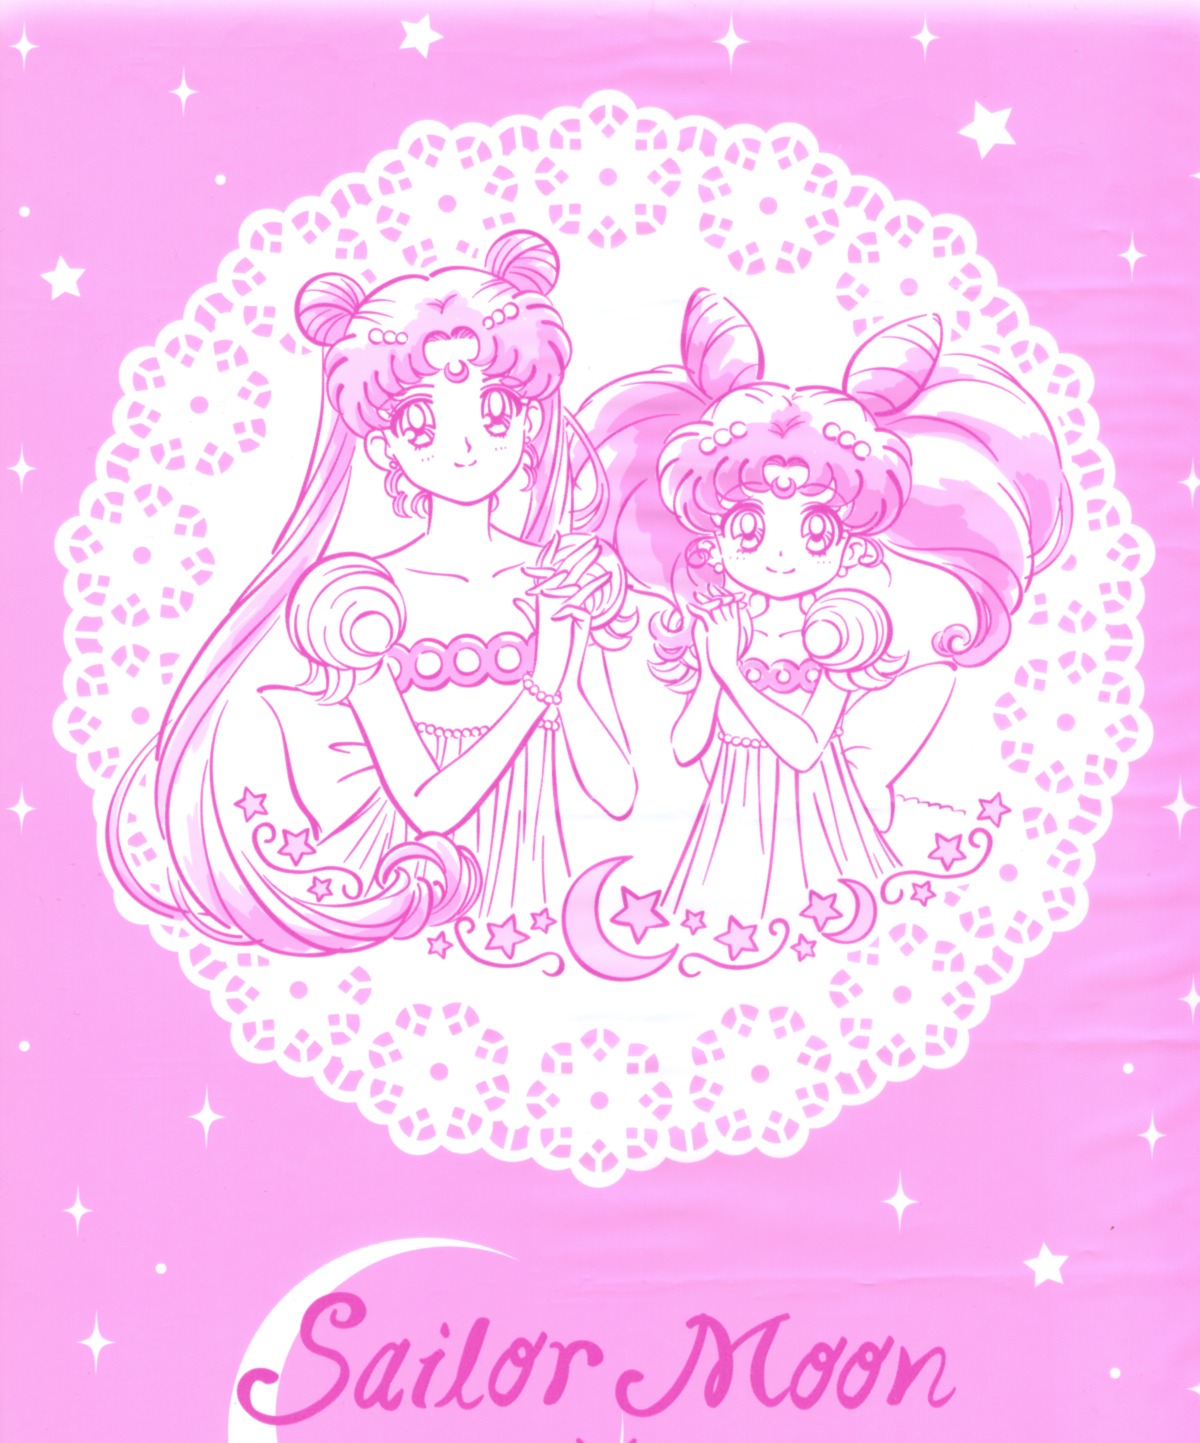 Sailor Moon Princess Serenity Usagi Small Lady Serenity